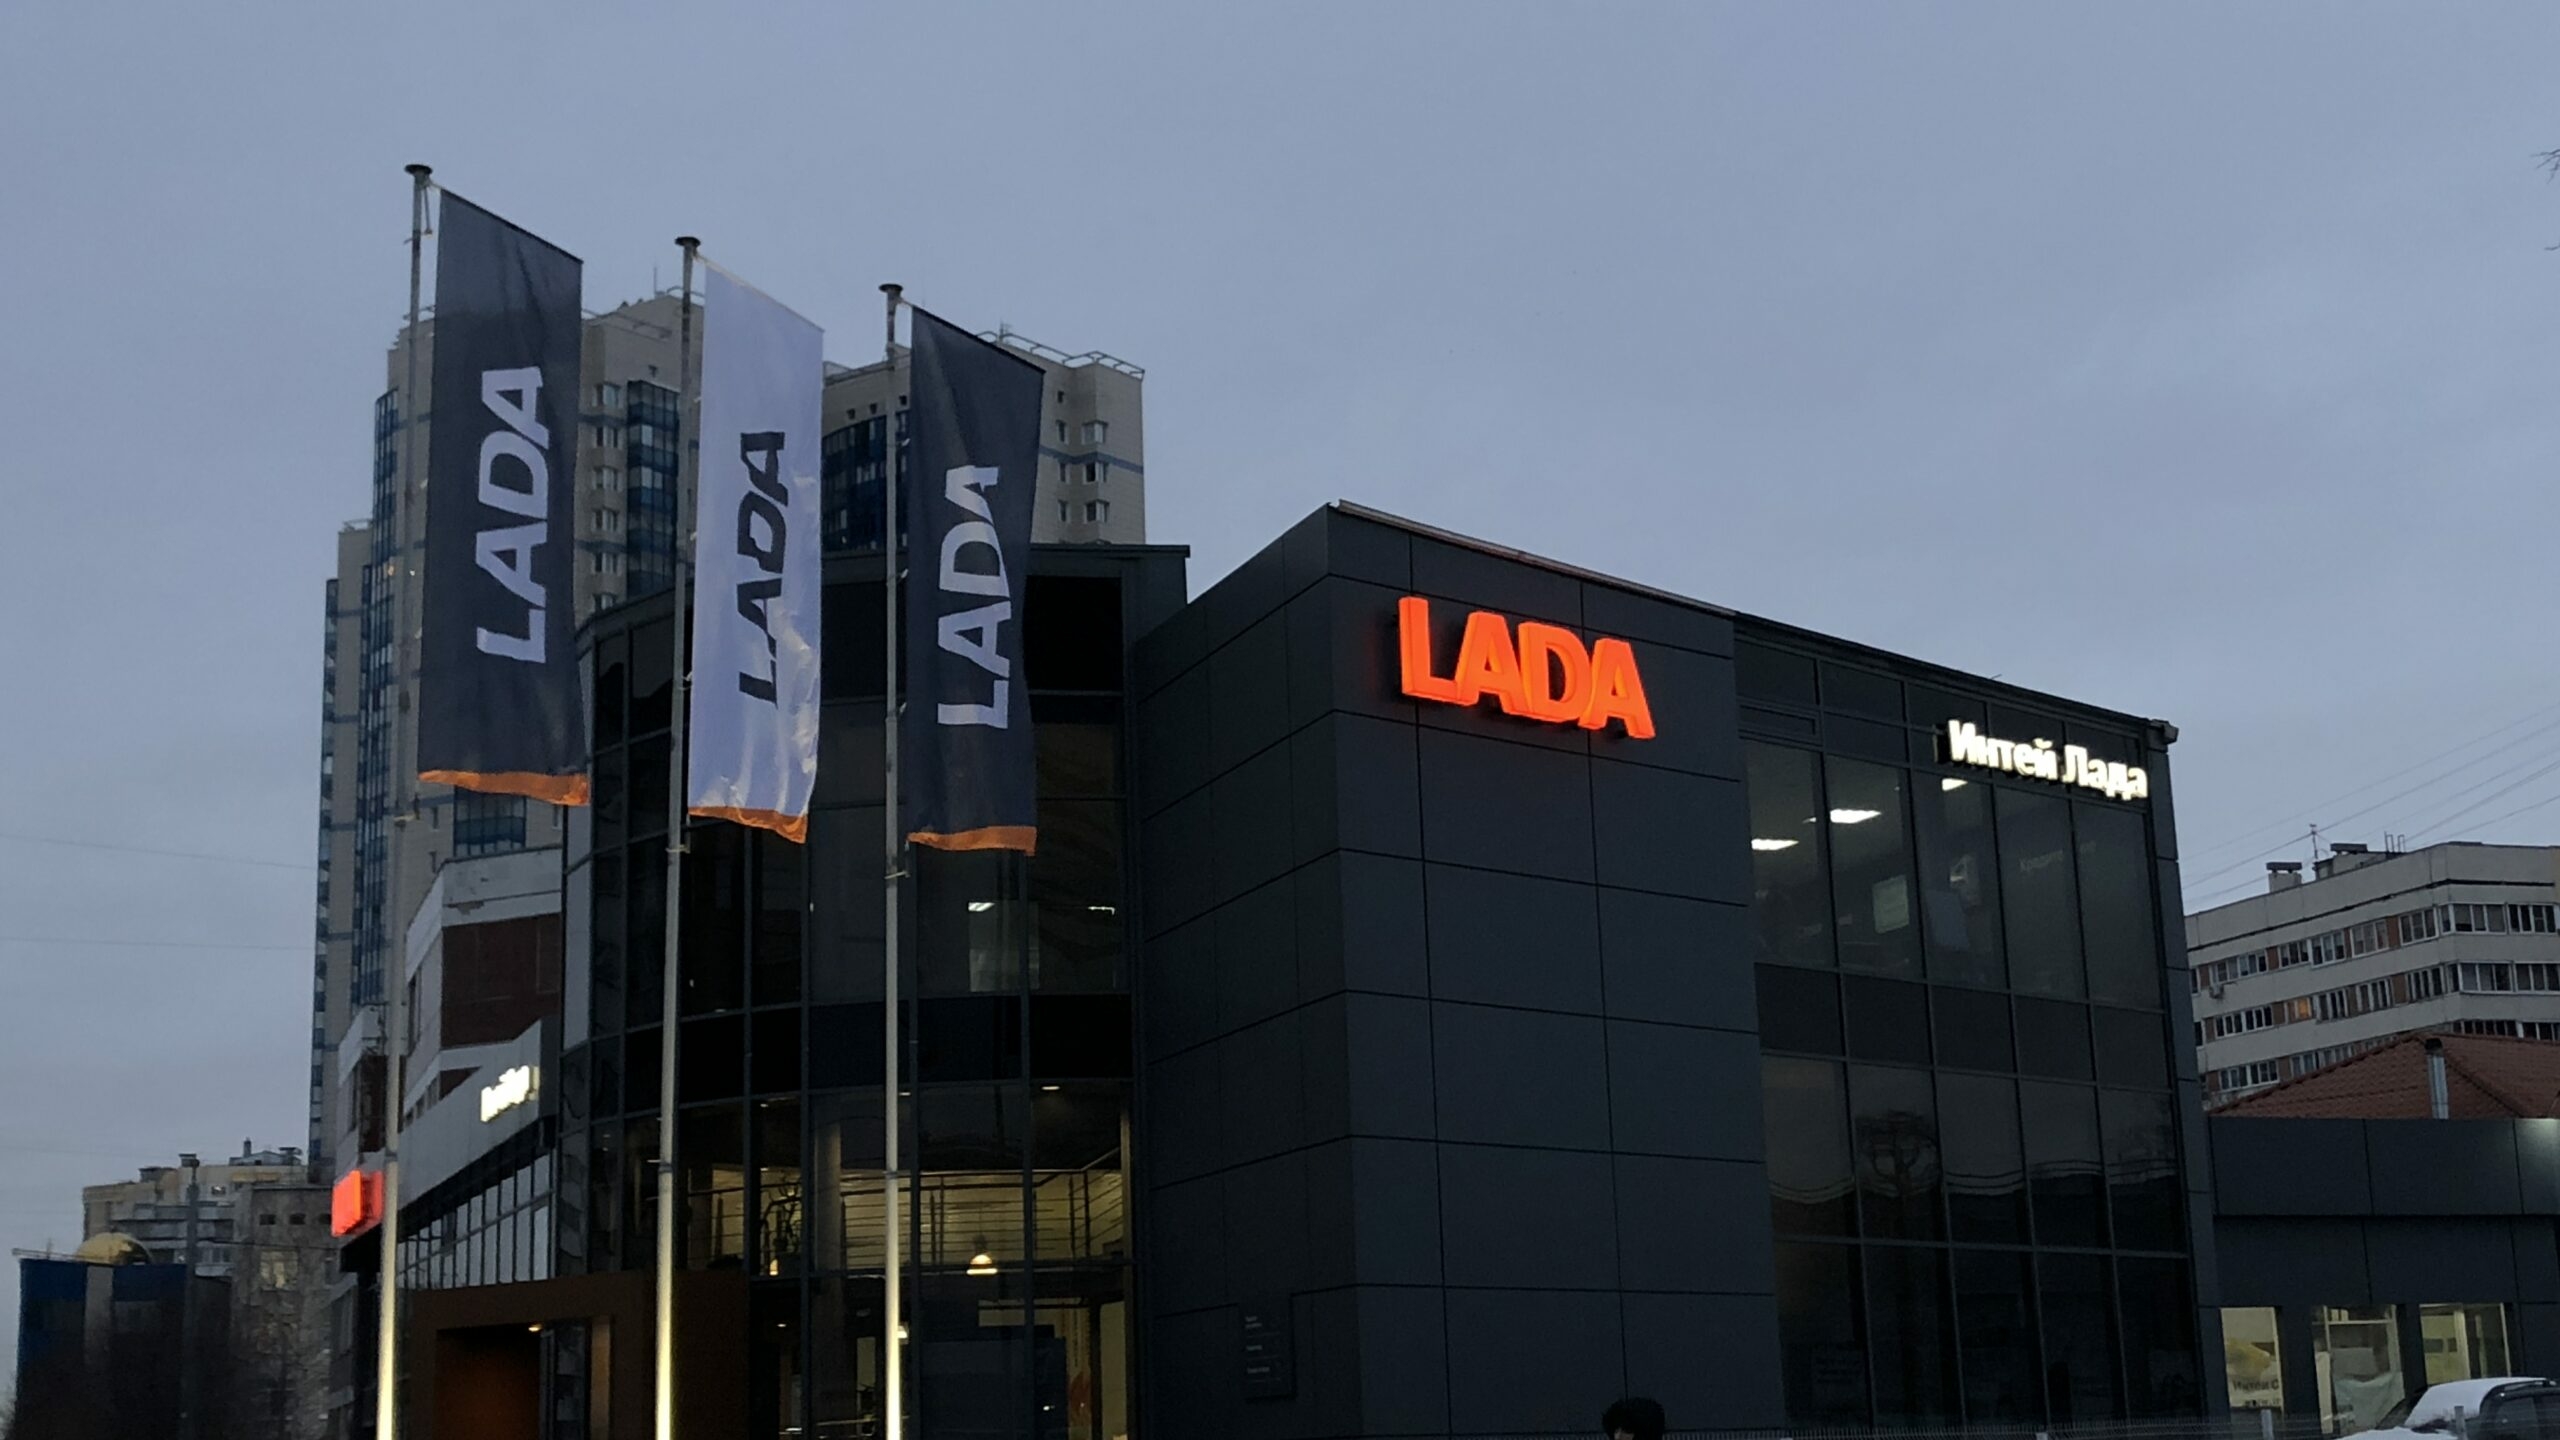 Автоэксперты не поддержали идею переименовать Lada в «Петербуржец»